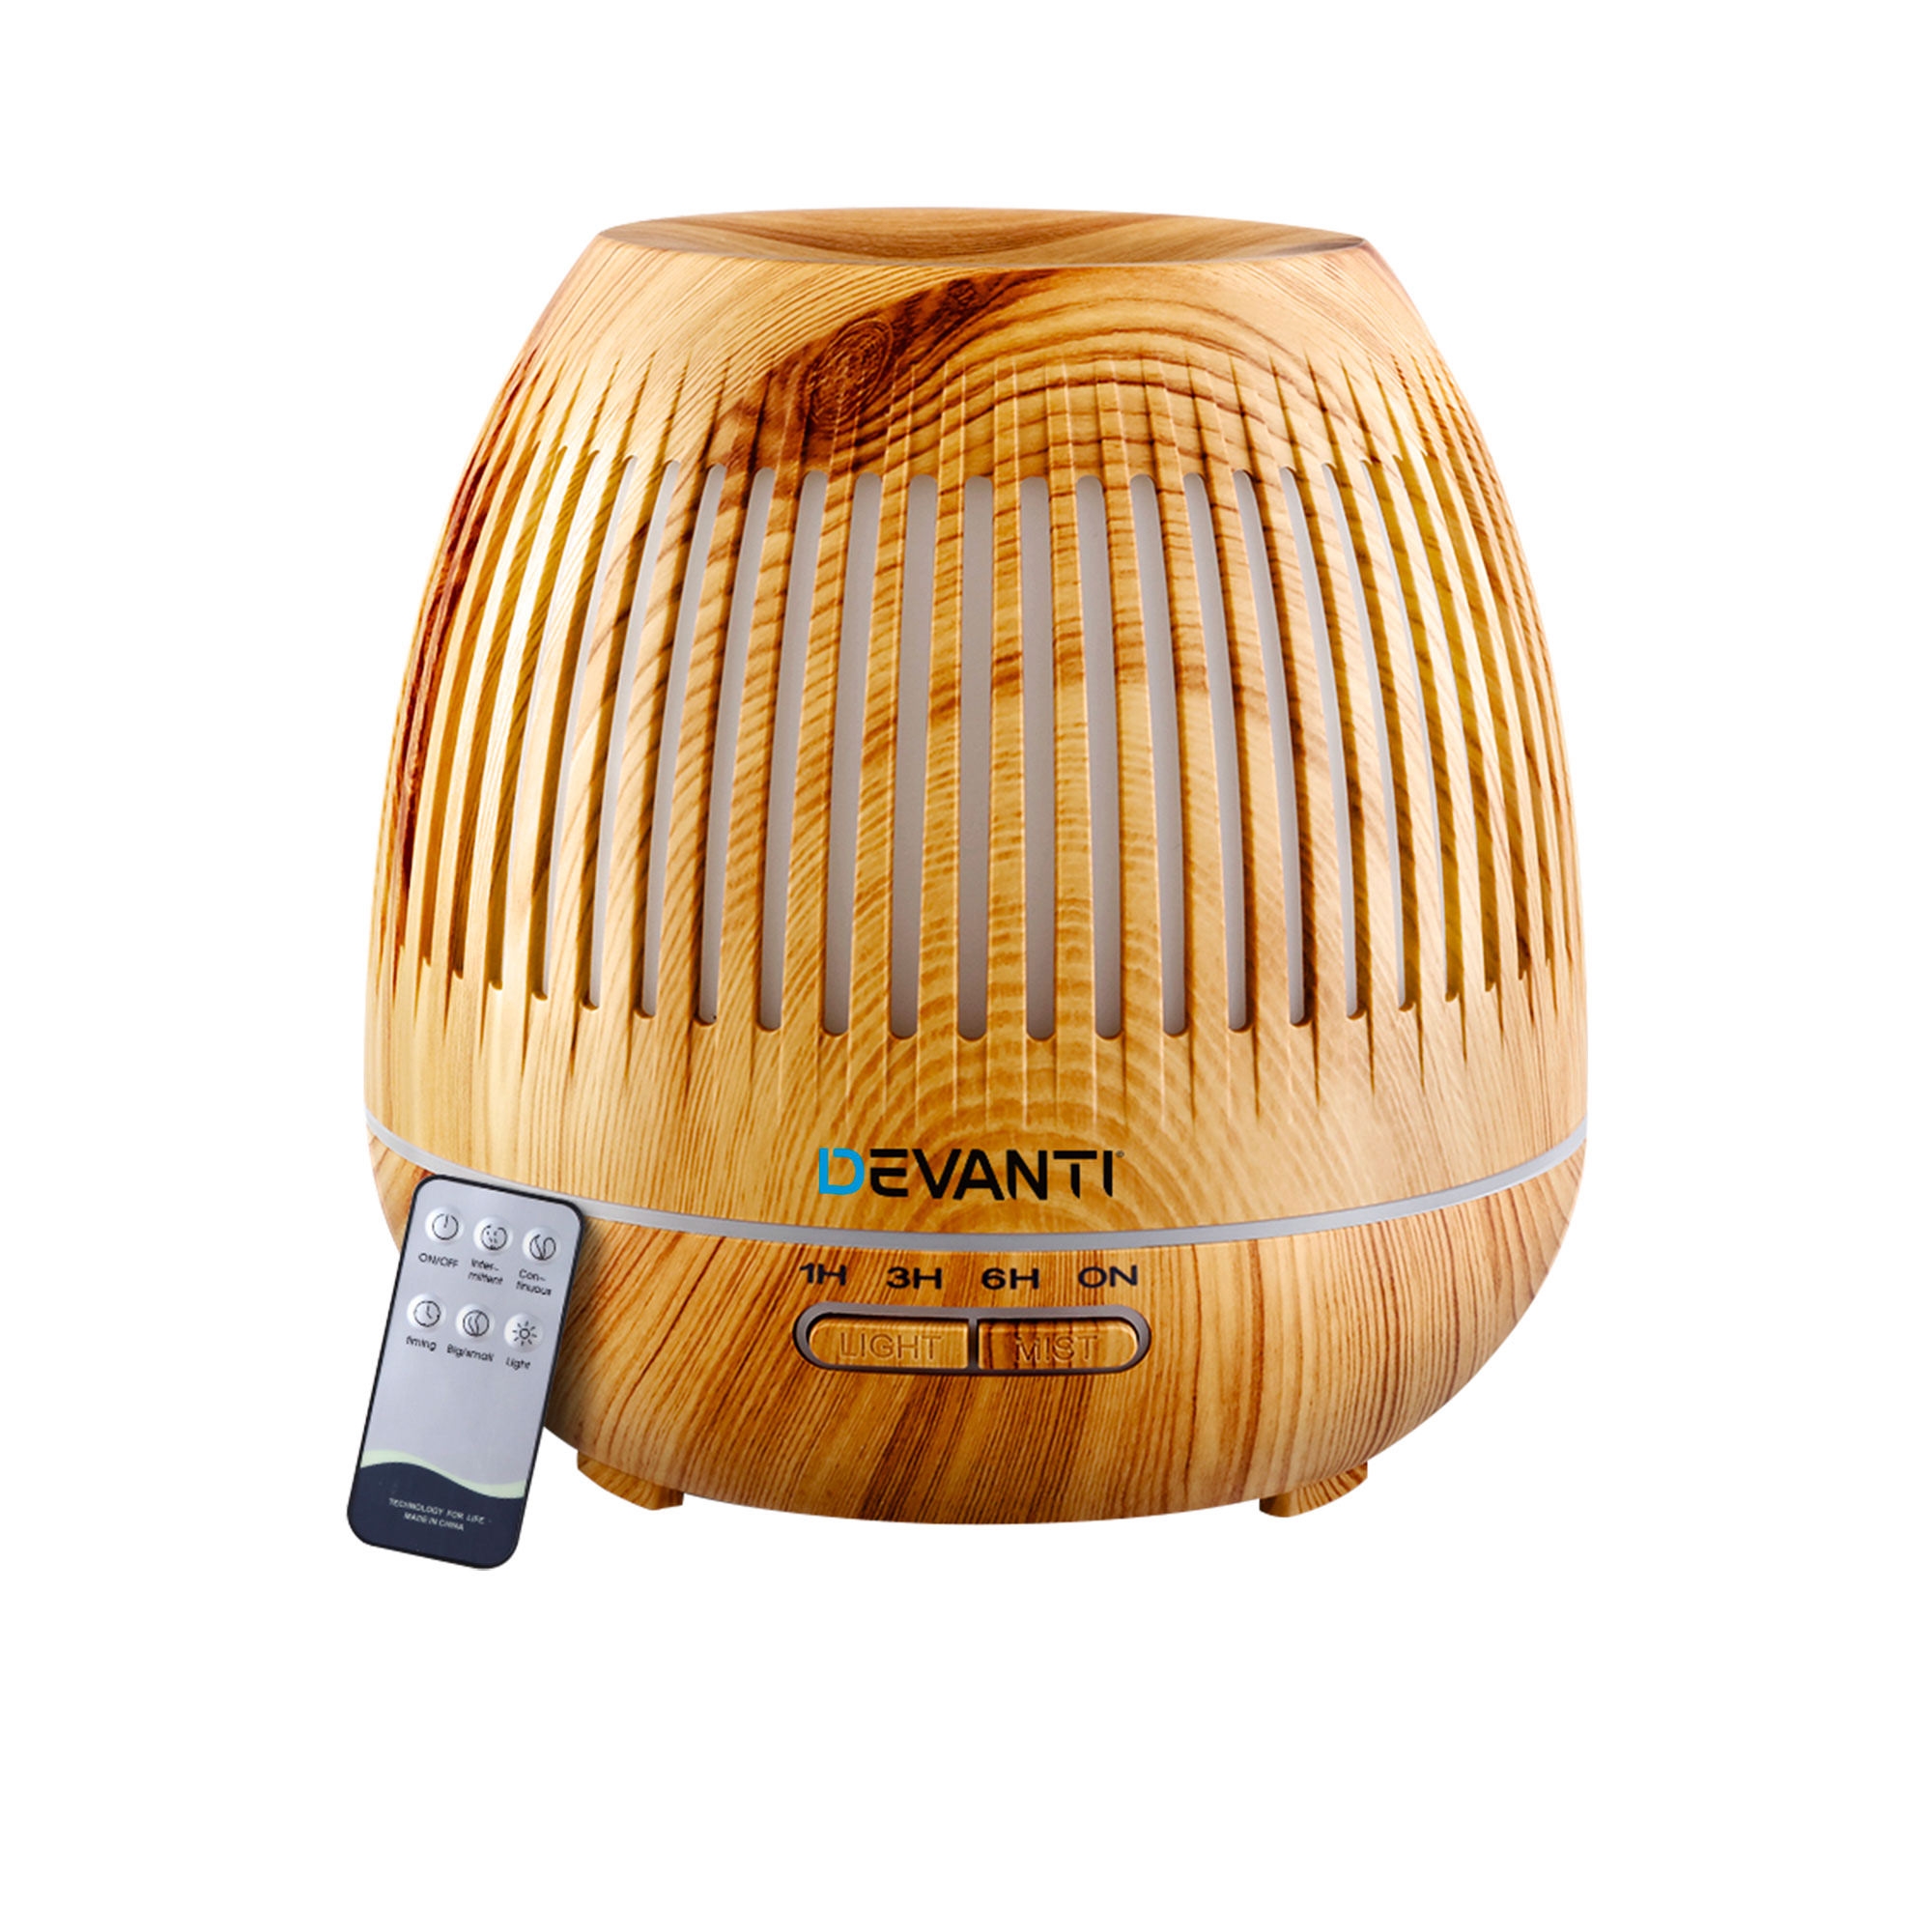 Devanti Aroma Diffuser with Remote 400ml Caged Image 1